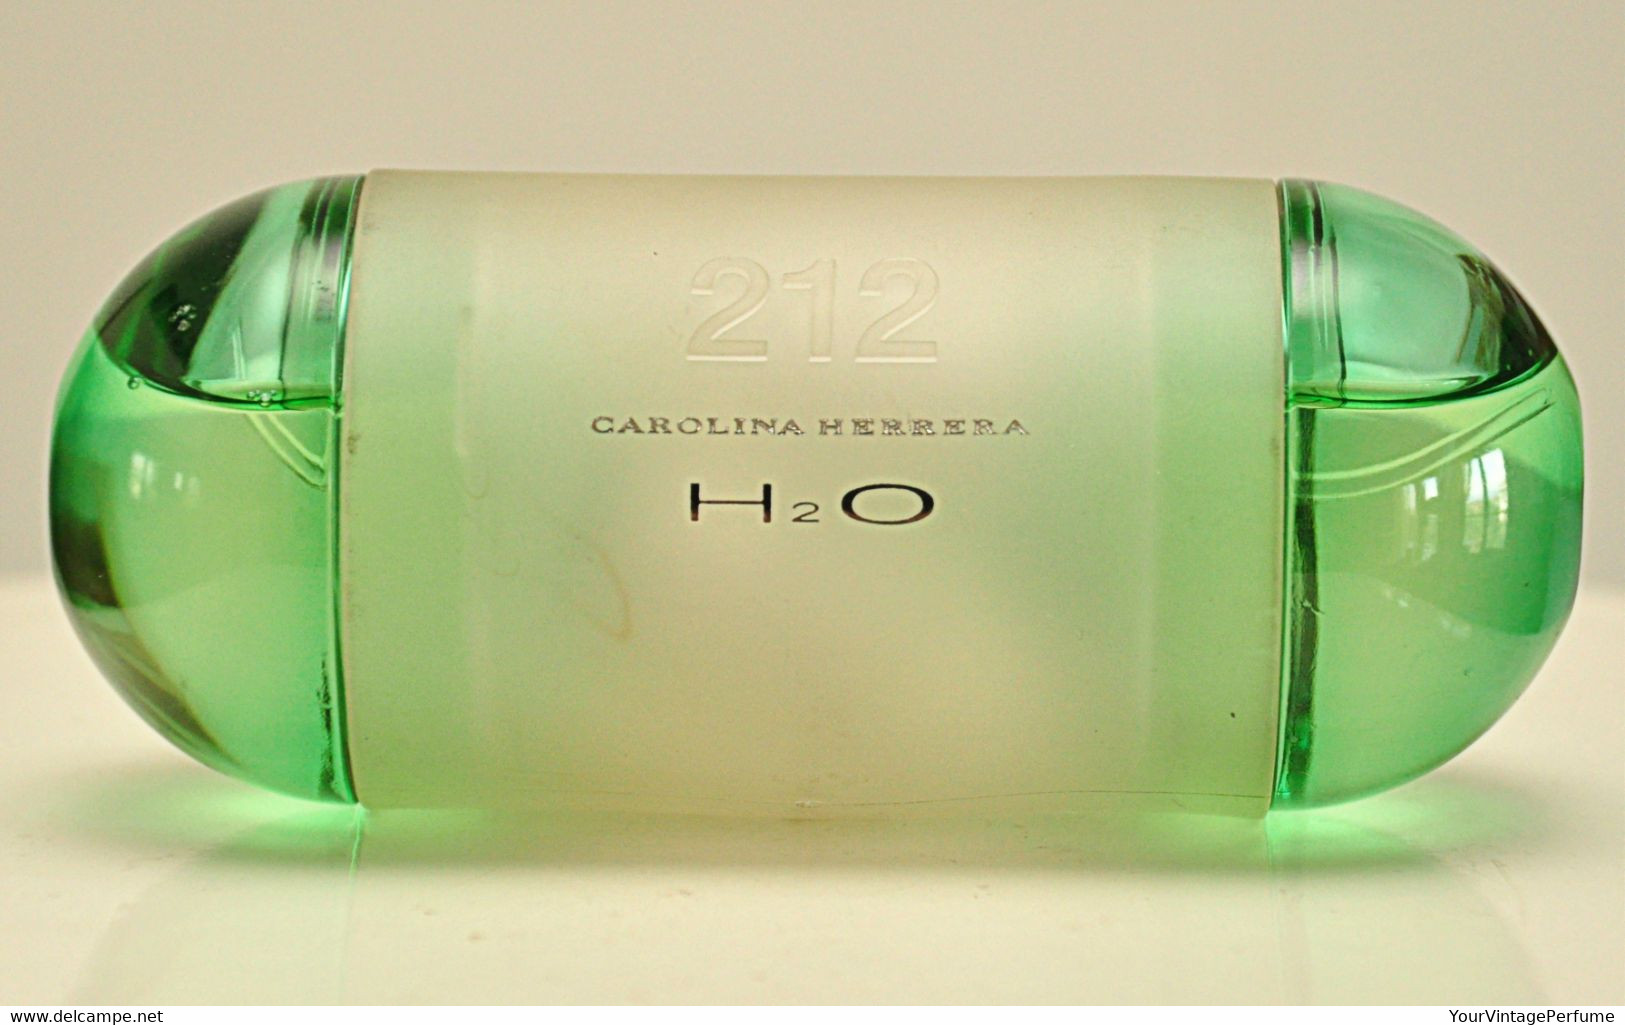 Carolina Herrera 212 H2O Eau De Toilette Edt 60ml 2 Fl. Oz. Spray Perfume For Woman Rare Vintage 2003 - Homme